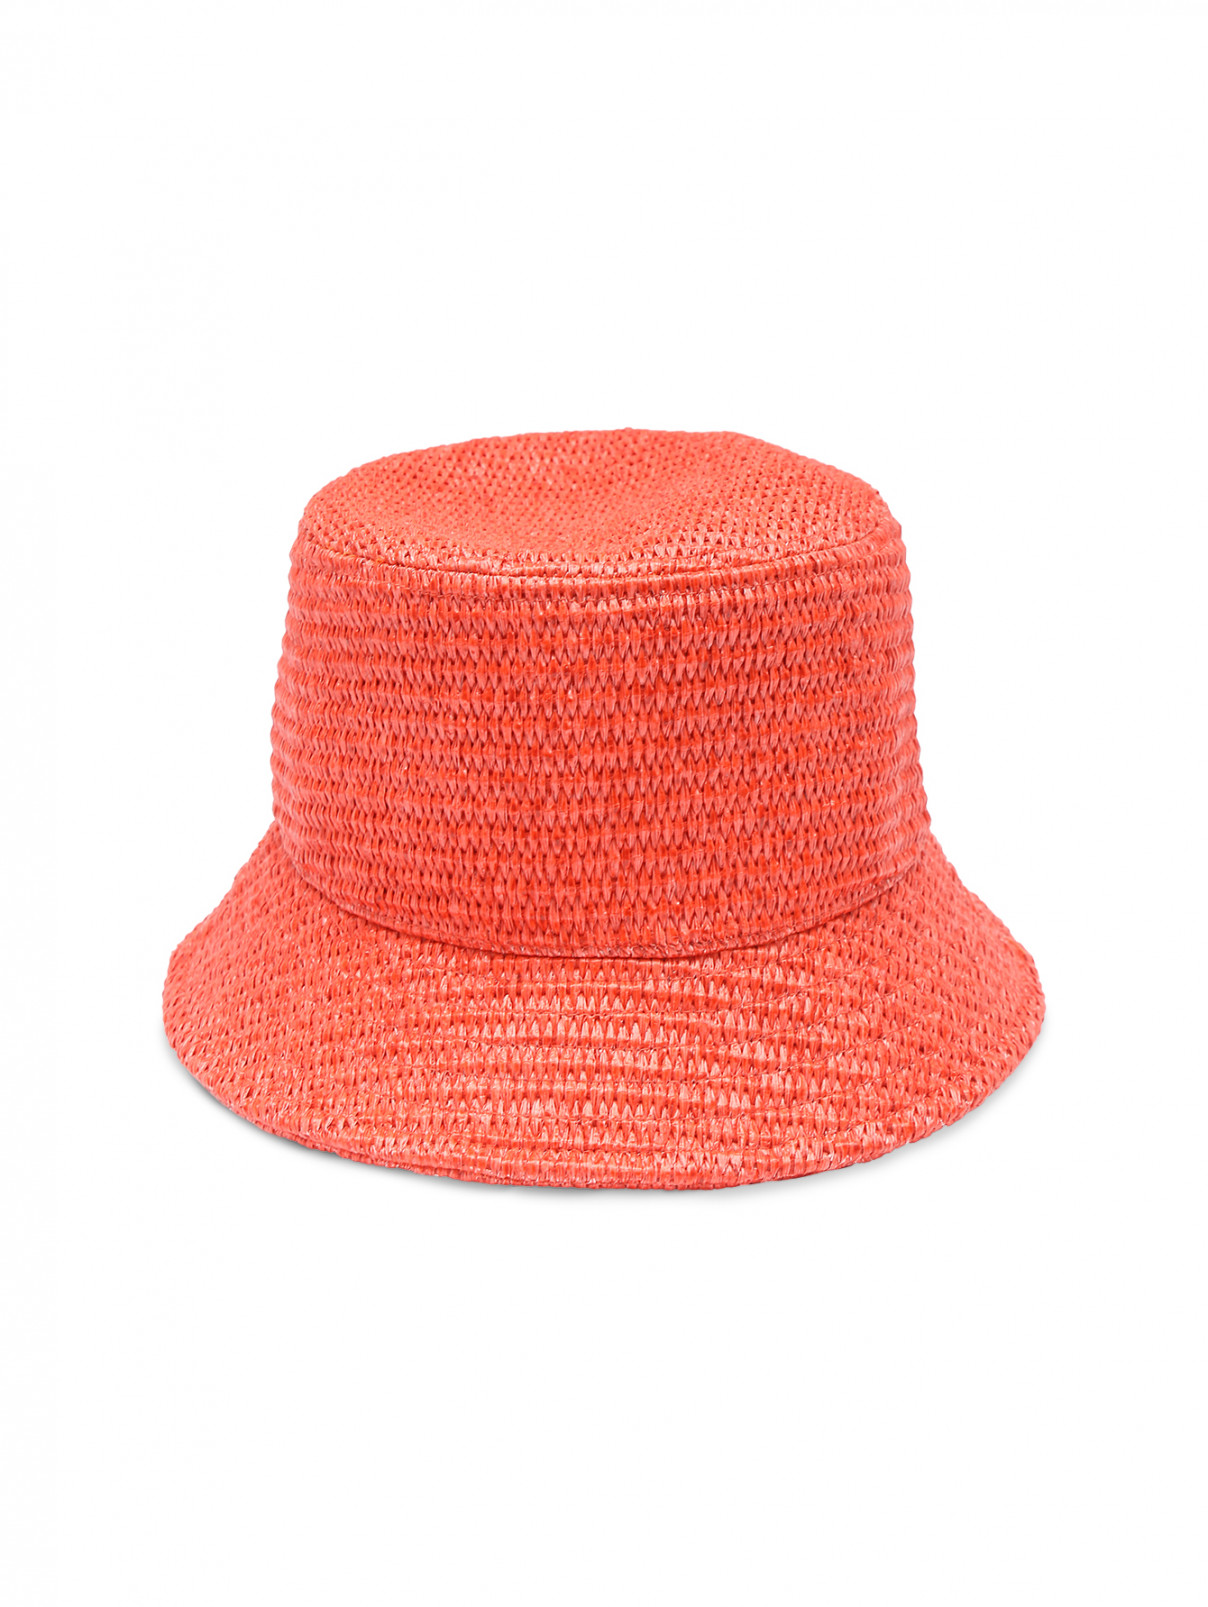 Шляпа плетеная с узкими полями Weekend Max Mara  –  Общий вид  – Цвет:  Красный